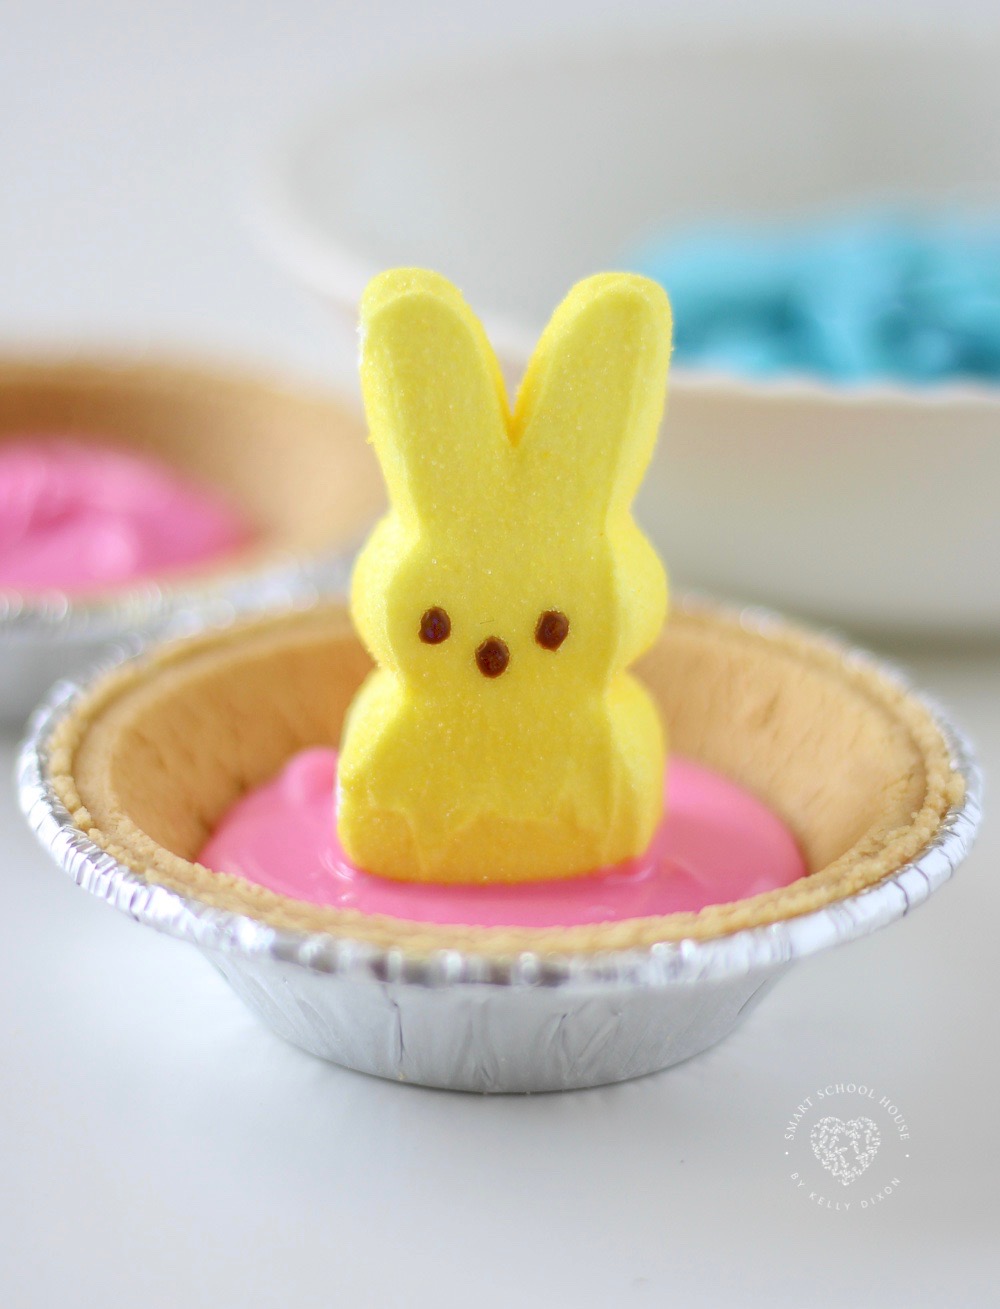 An edible Pet Peep for Easter. #EasterCraft #Peeps